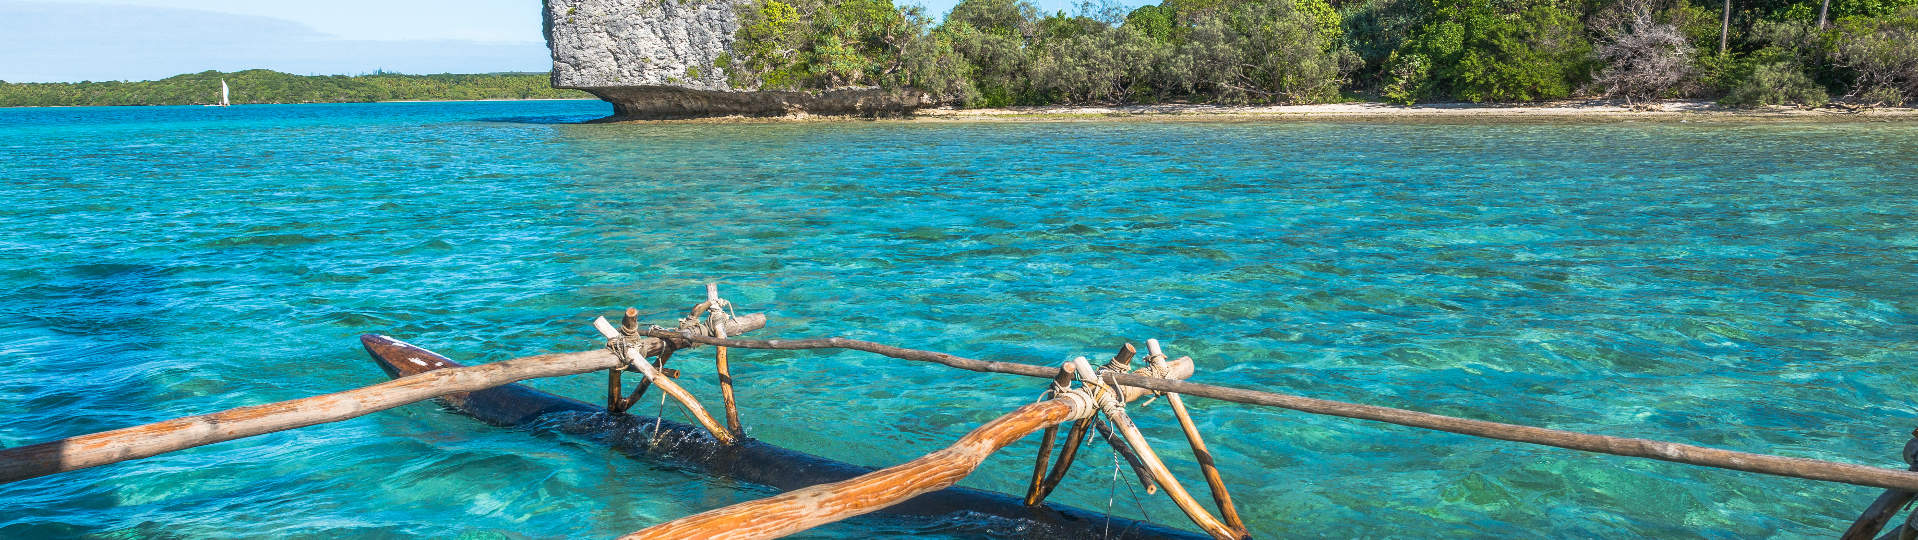 Botanist Validation Portrait Isle of Pines, New Caledonia | New Caledonia Tourism